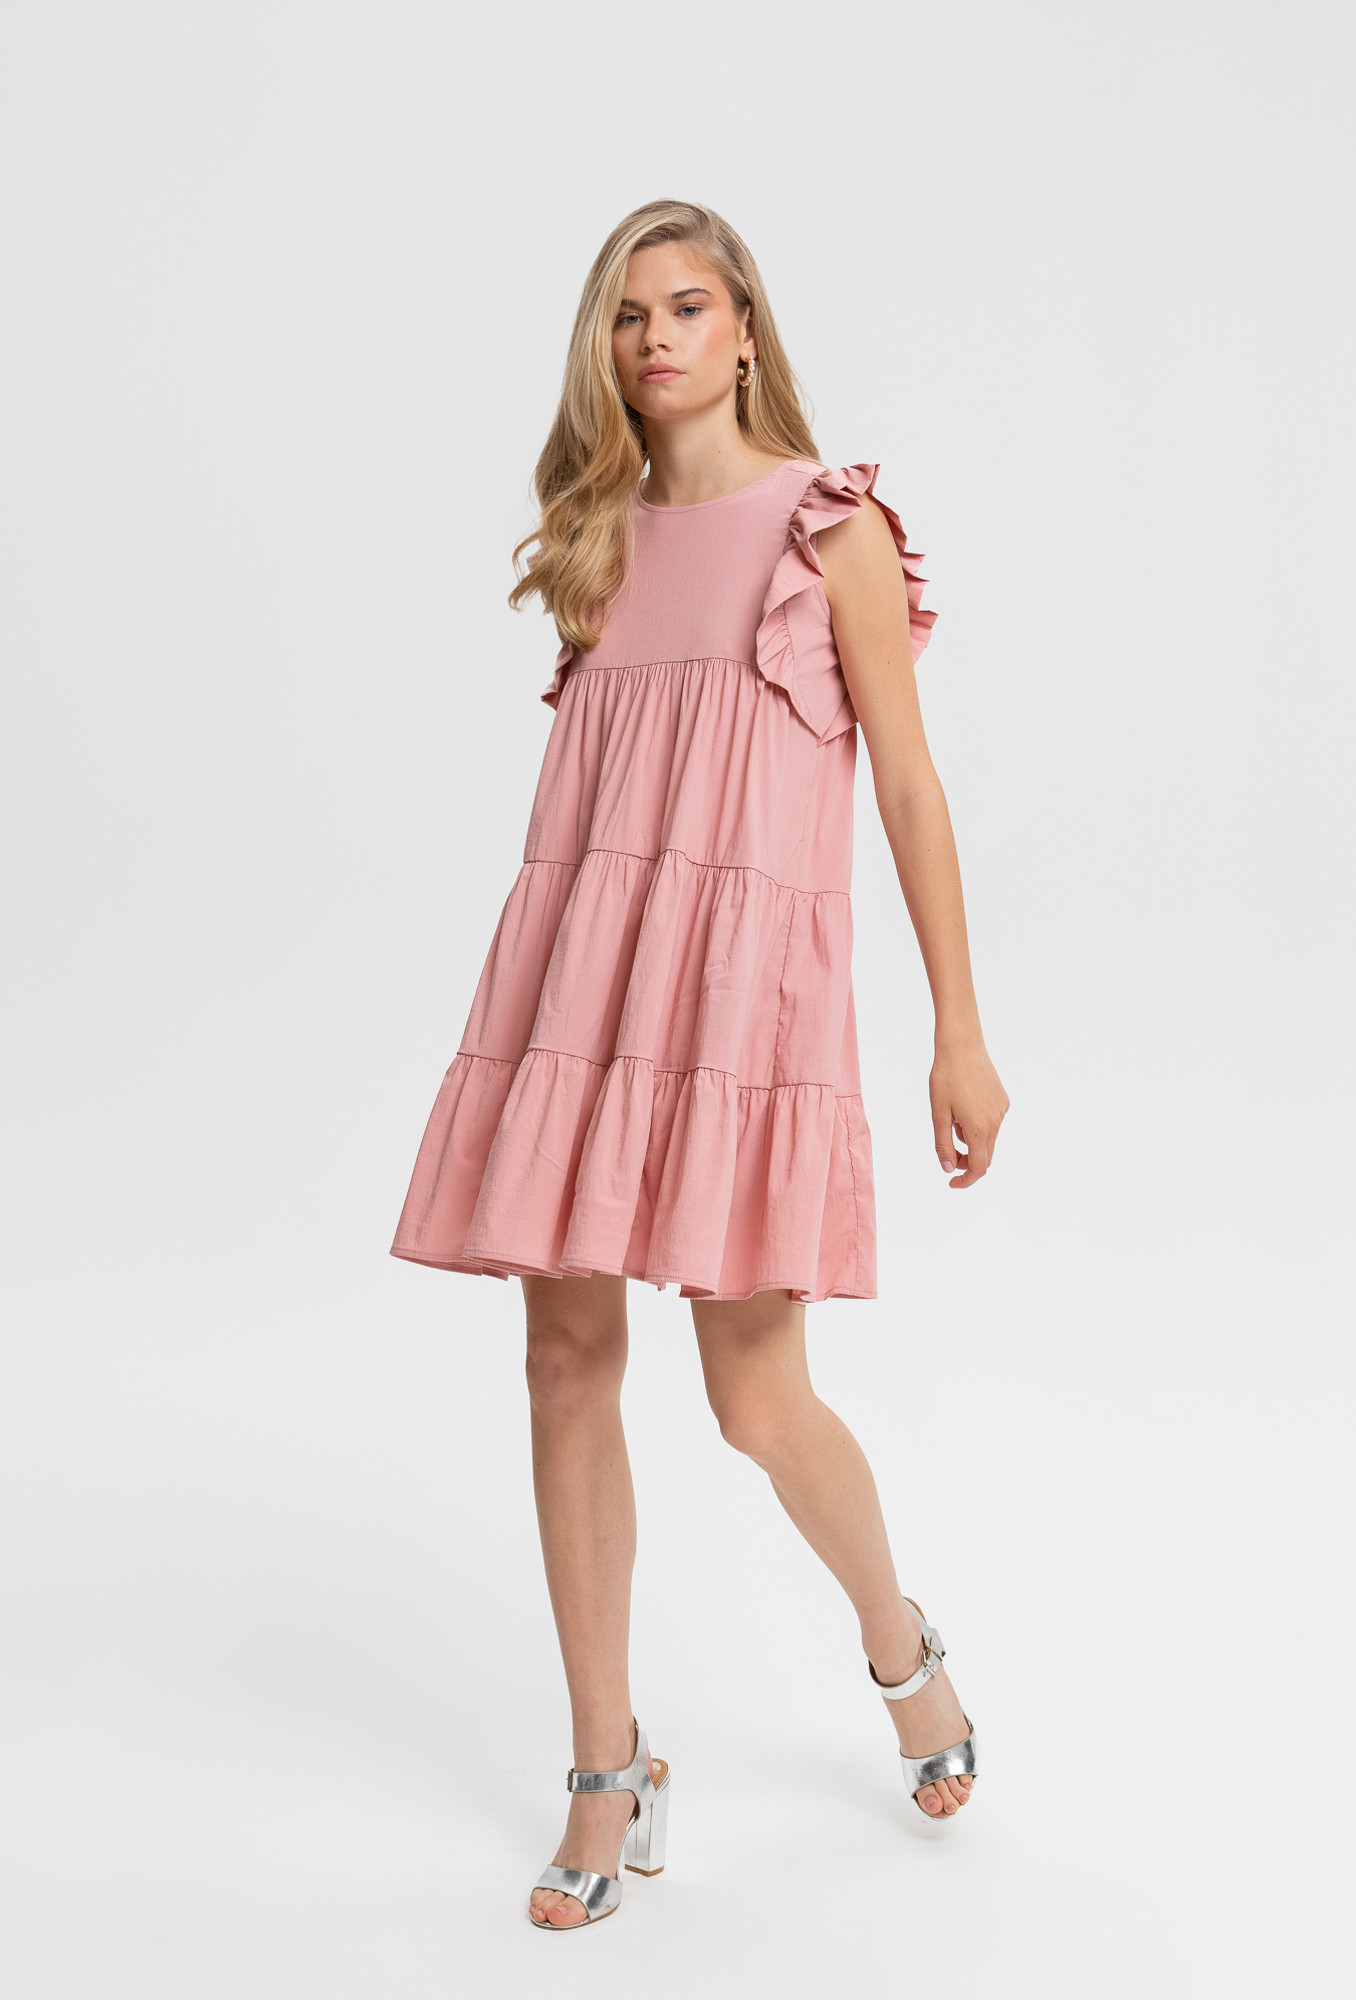 Monnari Šaty Mini šaty s volánem růžové 36